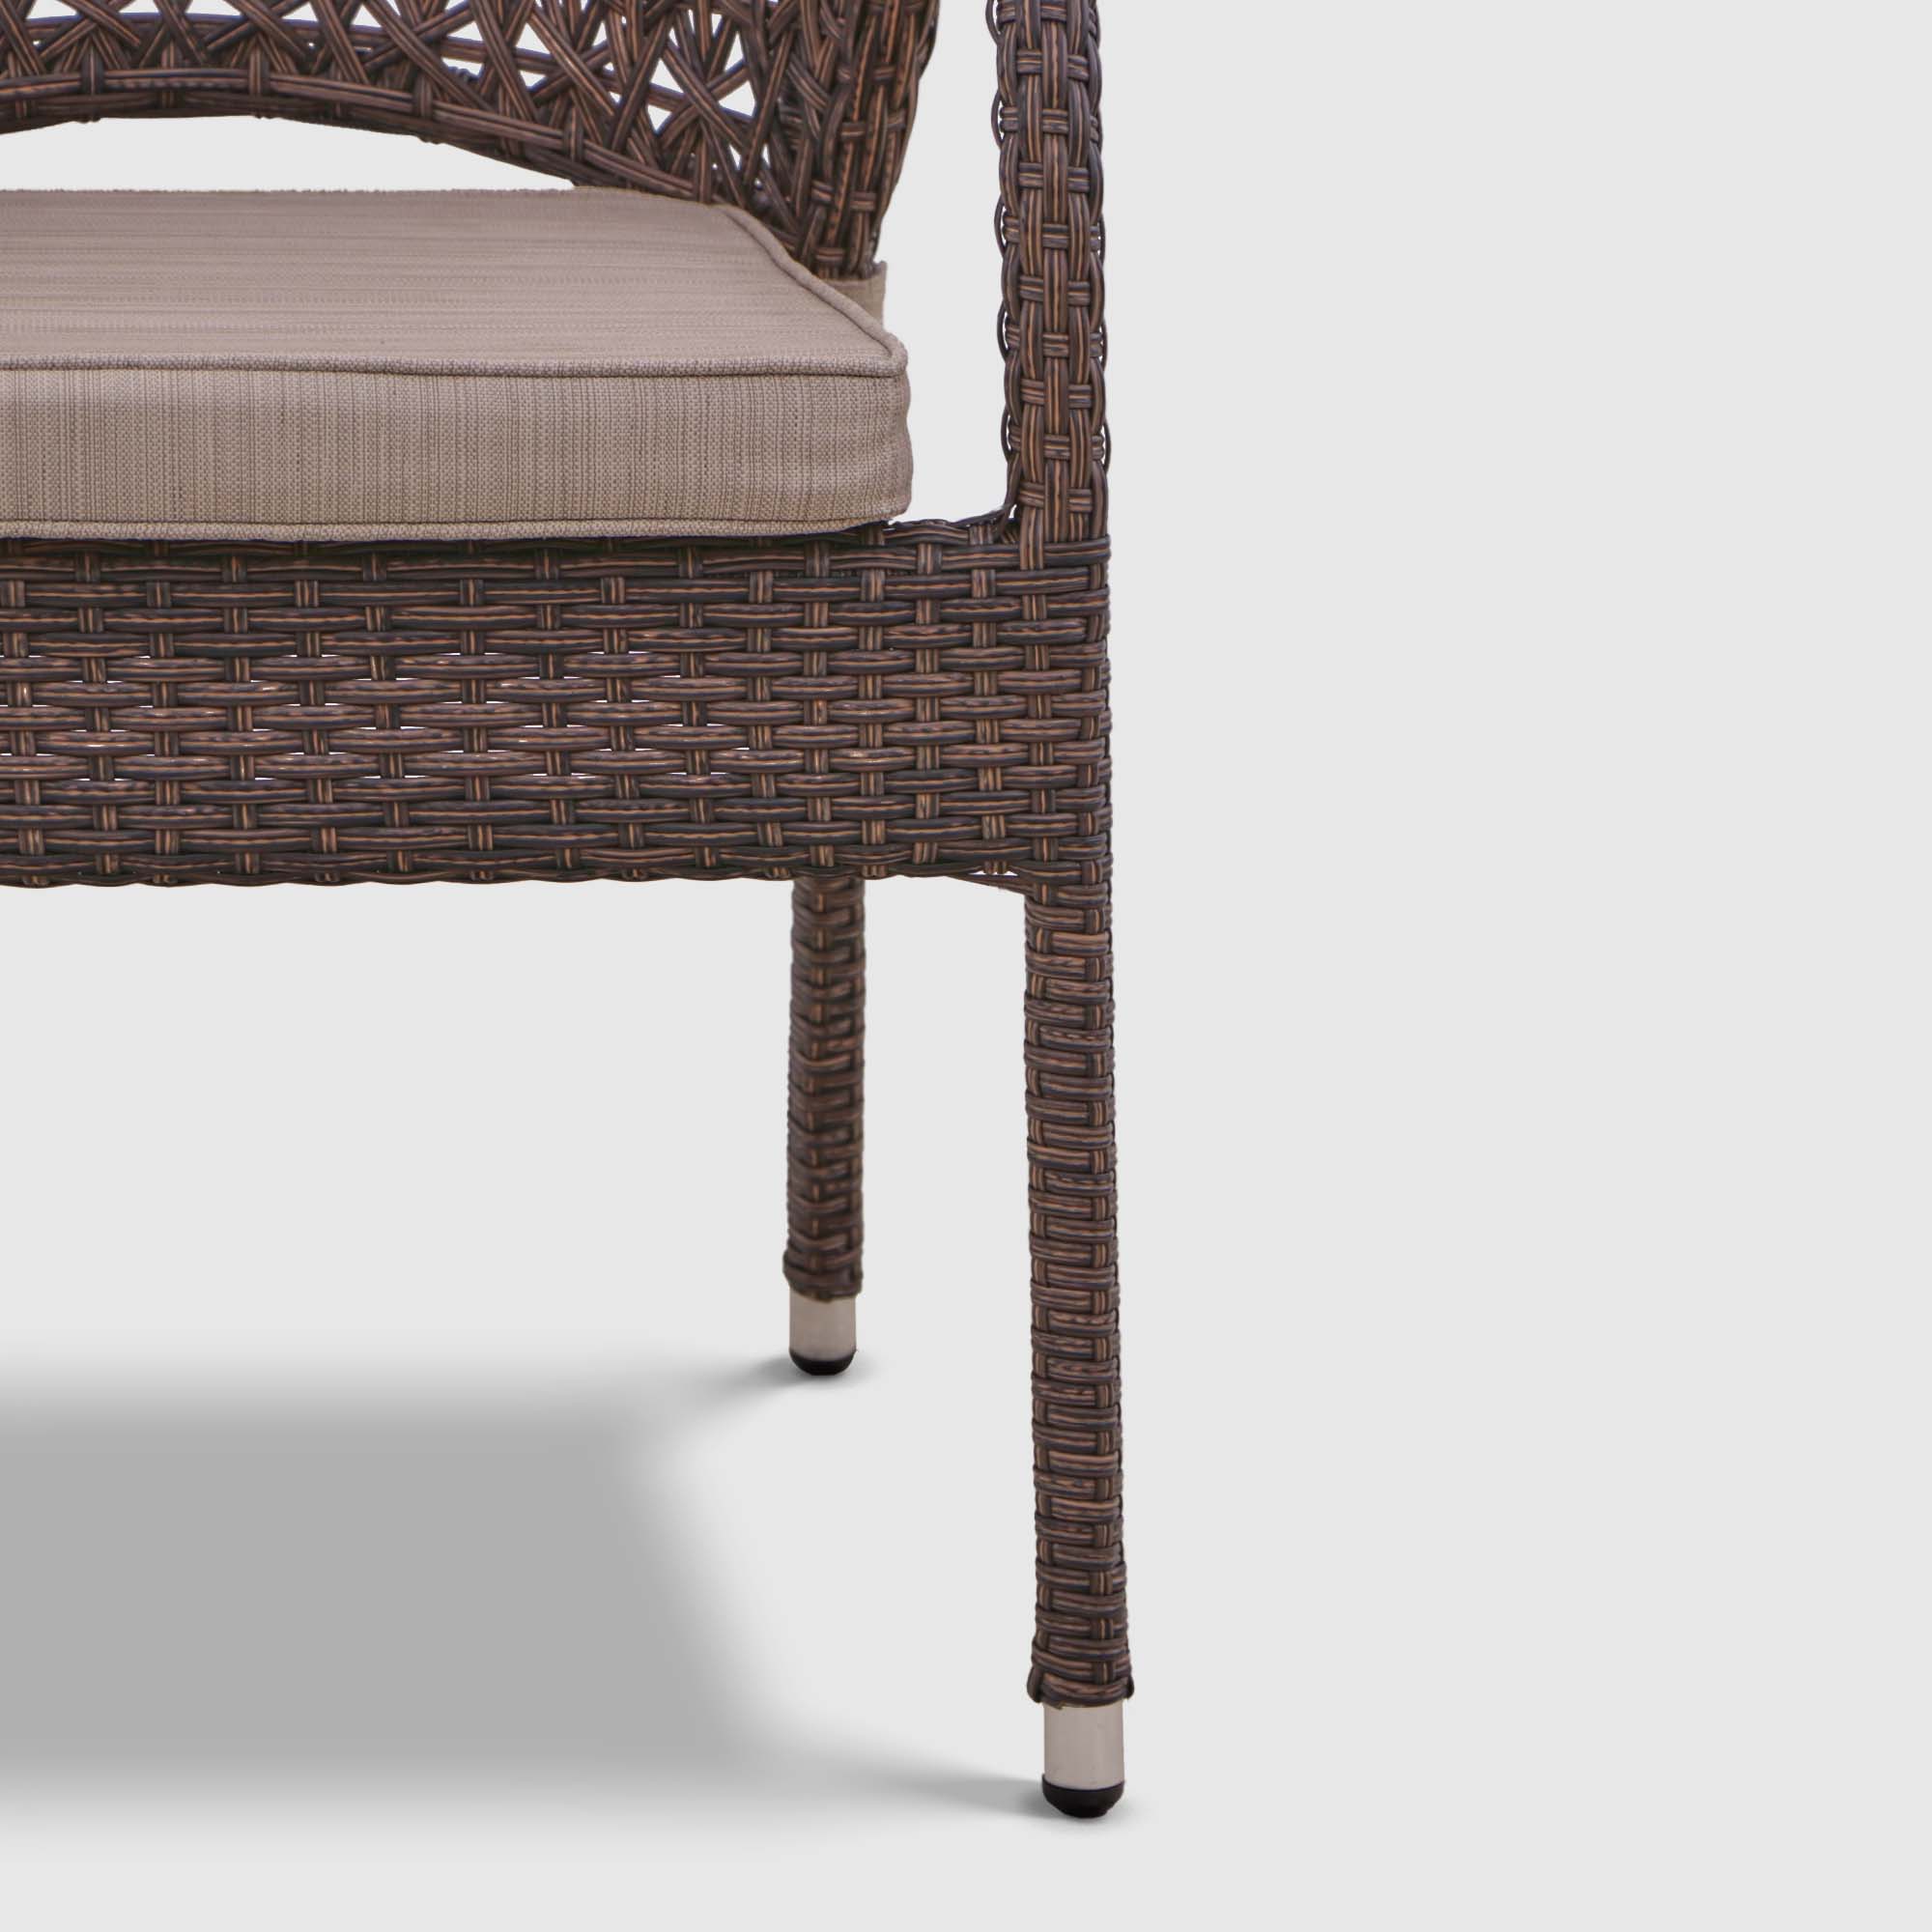 Комплект Мебели Ns Rattan TM-8TCH 9 предметов, цвет коричневый, размер 55х55х70 см - фото 14